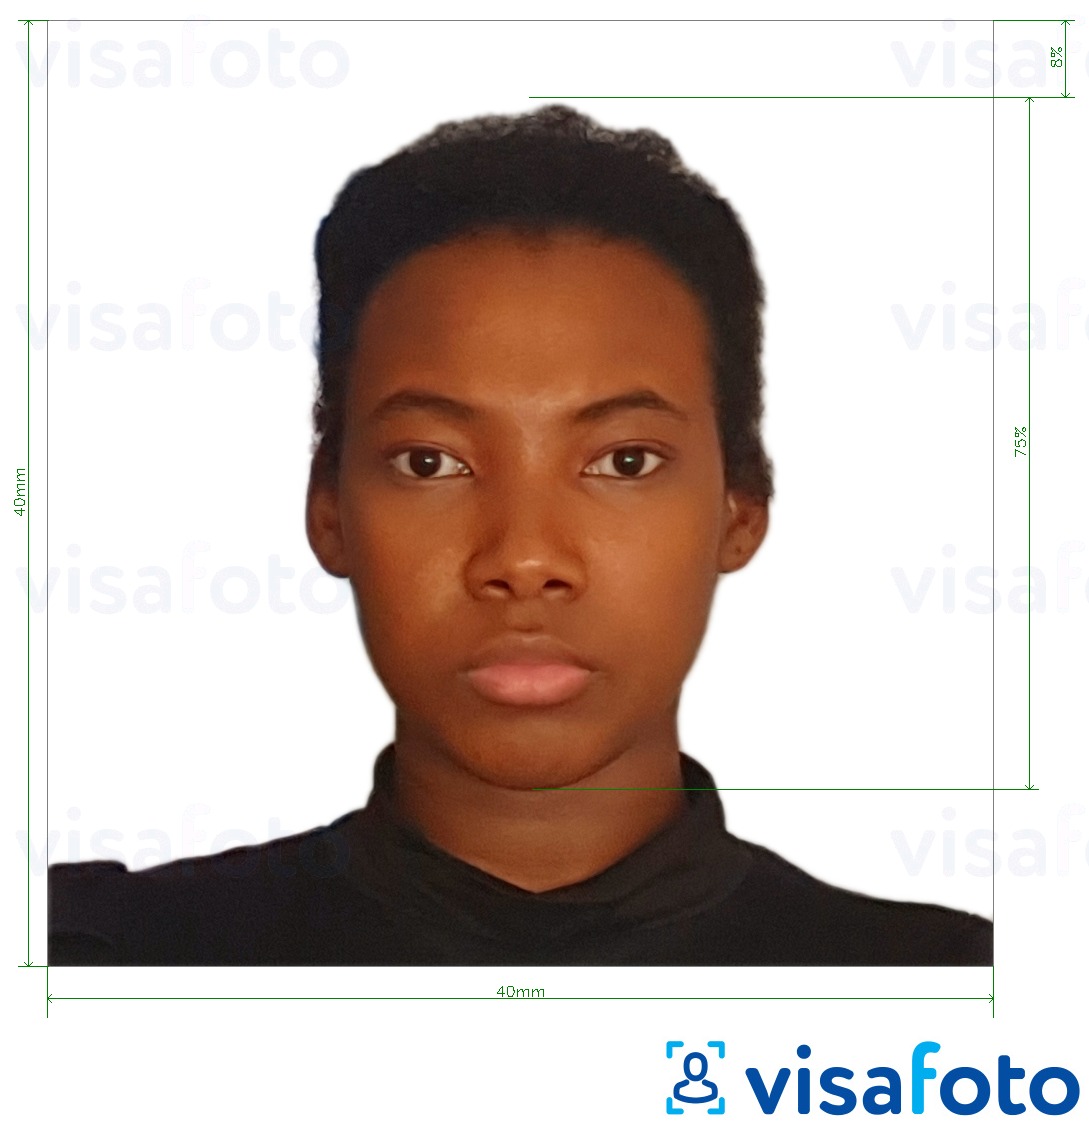 Contoh foto untuk Visa Kamerun 4x4 cm (40x40 mm) dengan spesifikasi saiz yang tepat.